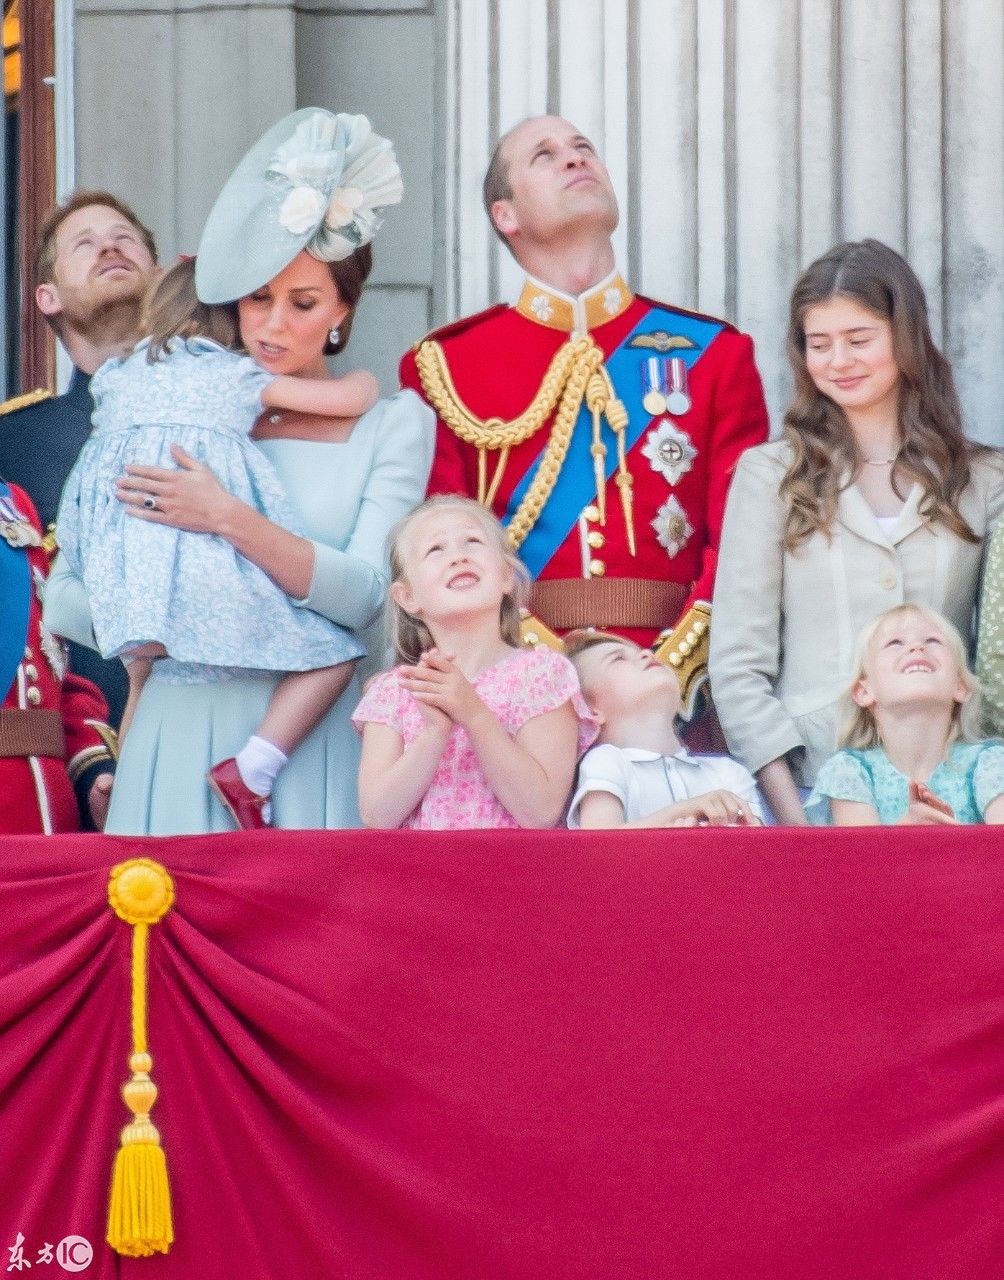 英国王室庆典,乔治小王子竟承包了表情包,被表